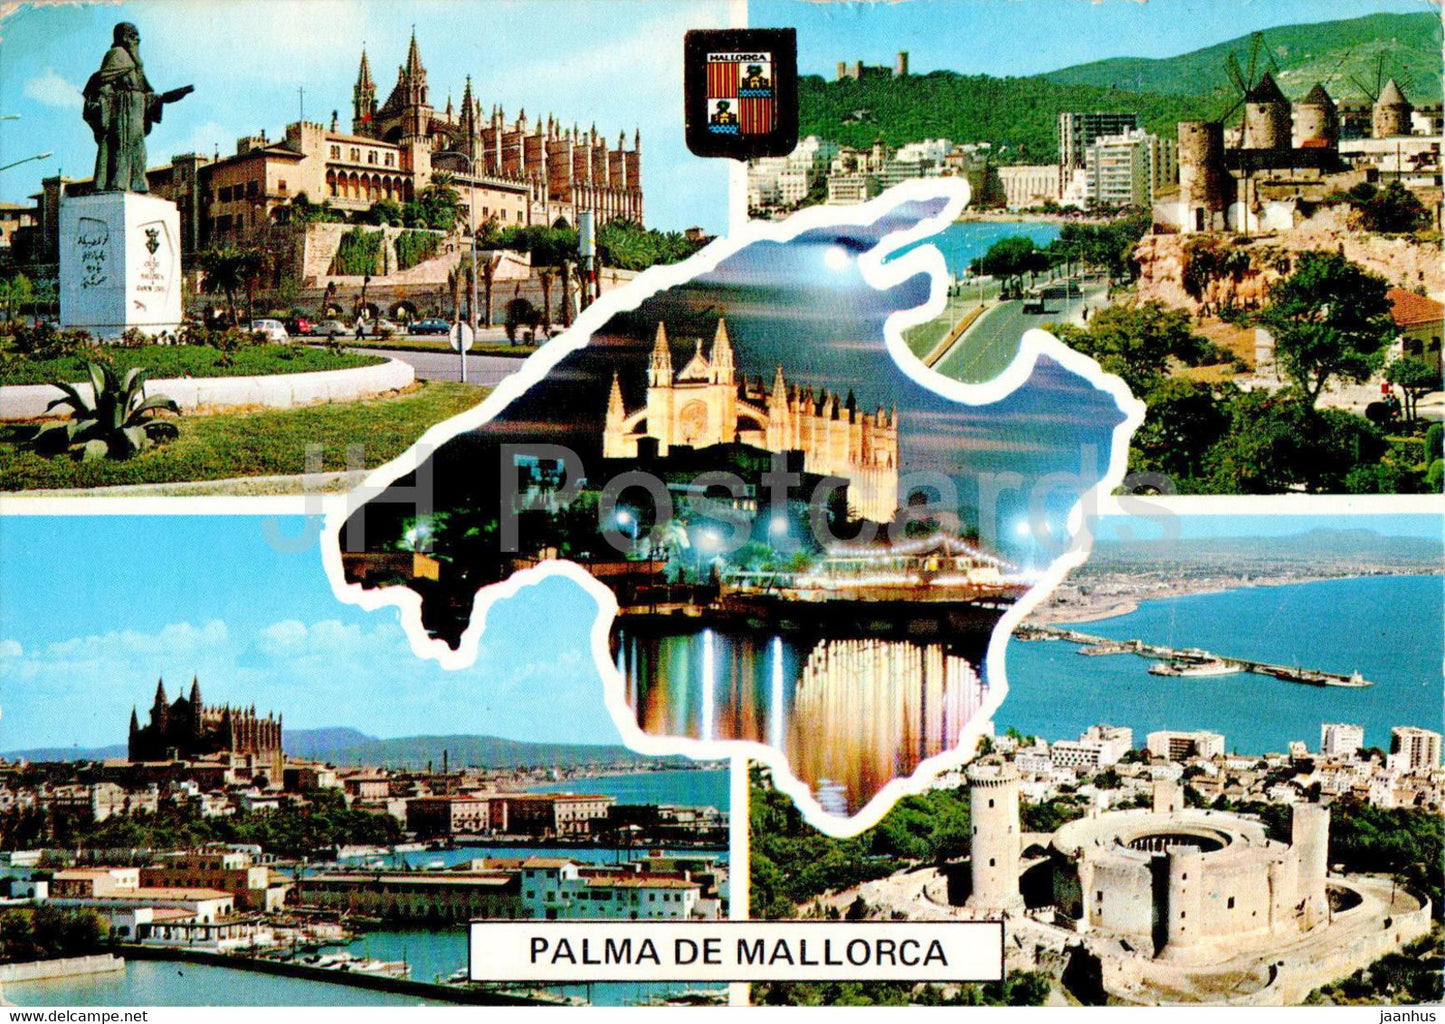 Palma de Mallorca - Catedral y Castillo de Bellver - cathedral -2465 - 1978 - Spain - used - JH Postcards